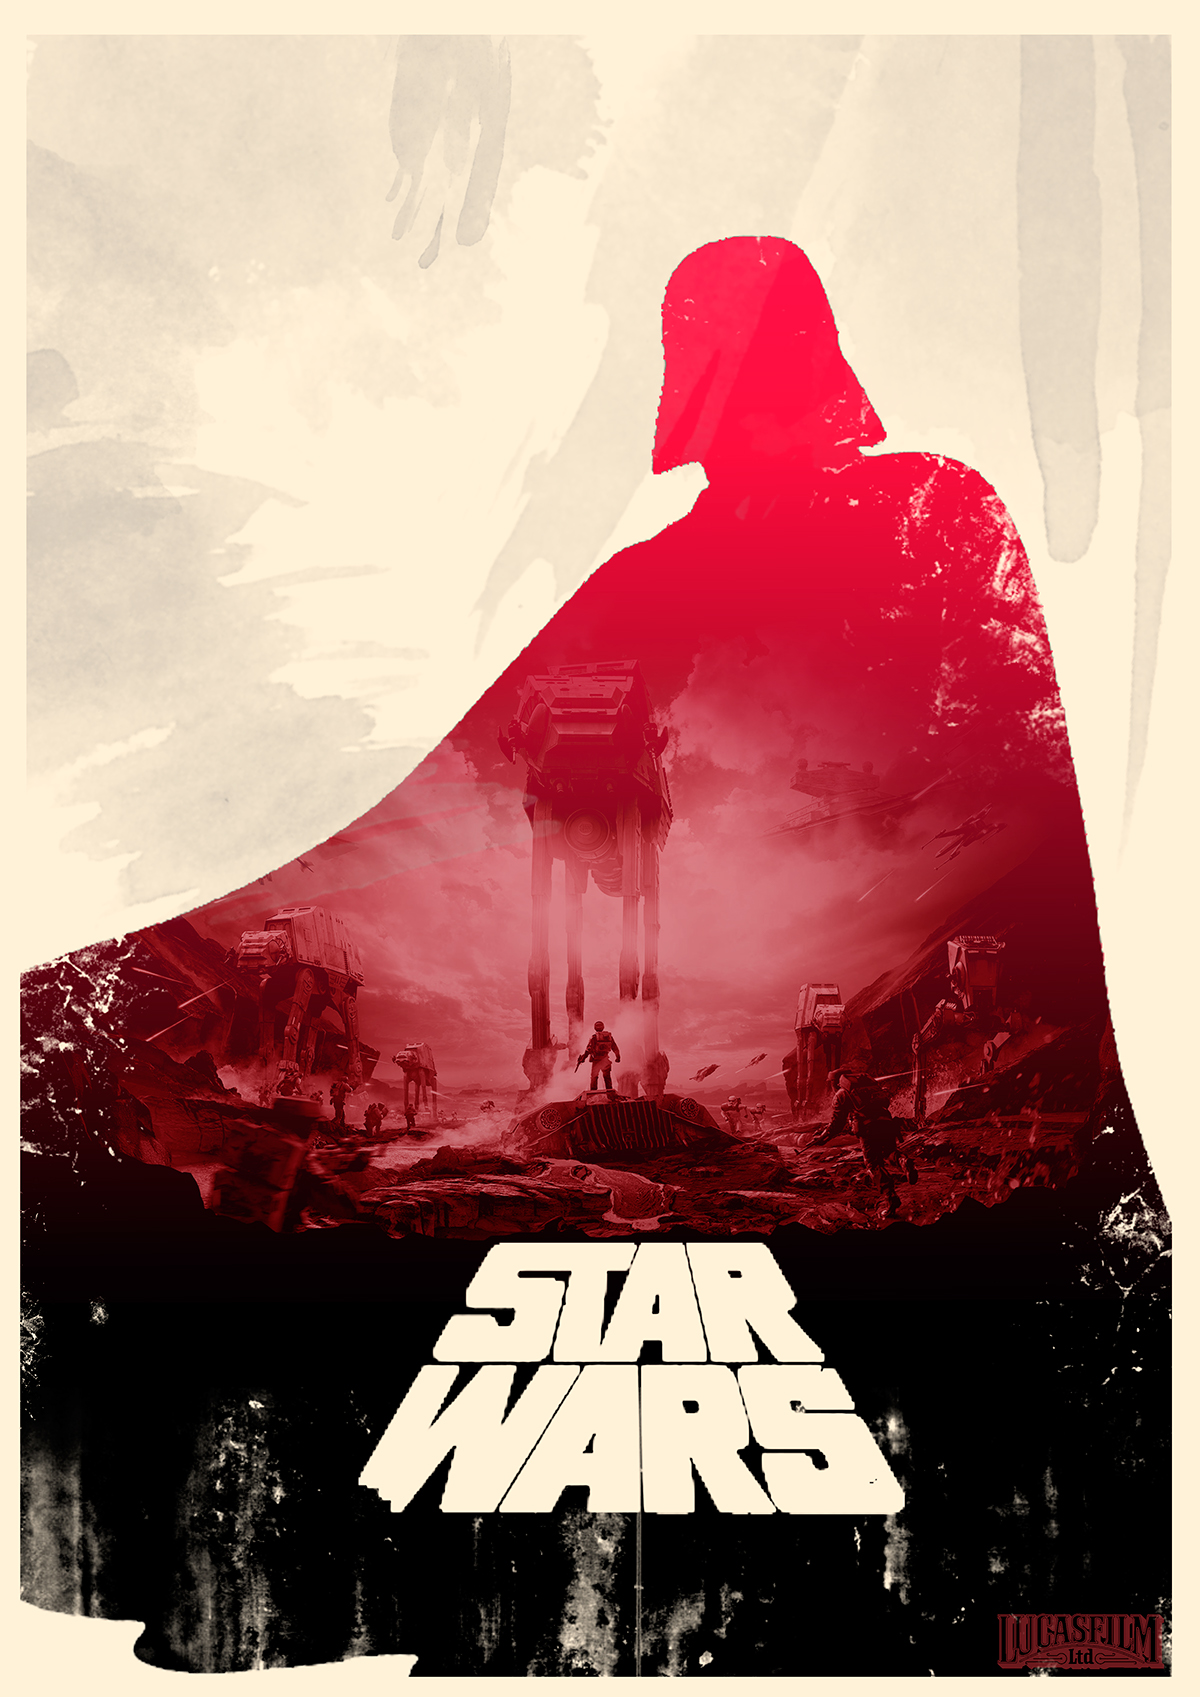 star Wars Starwars star wars photoshop poster ilustation Lucasfilm